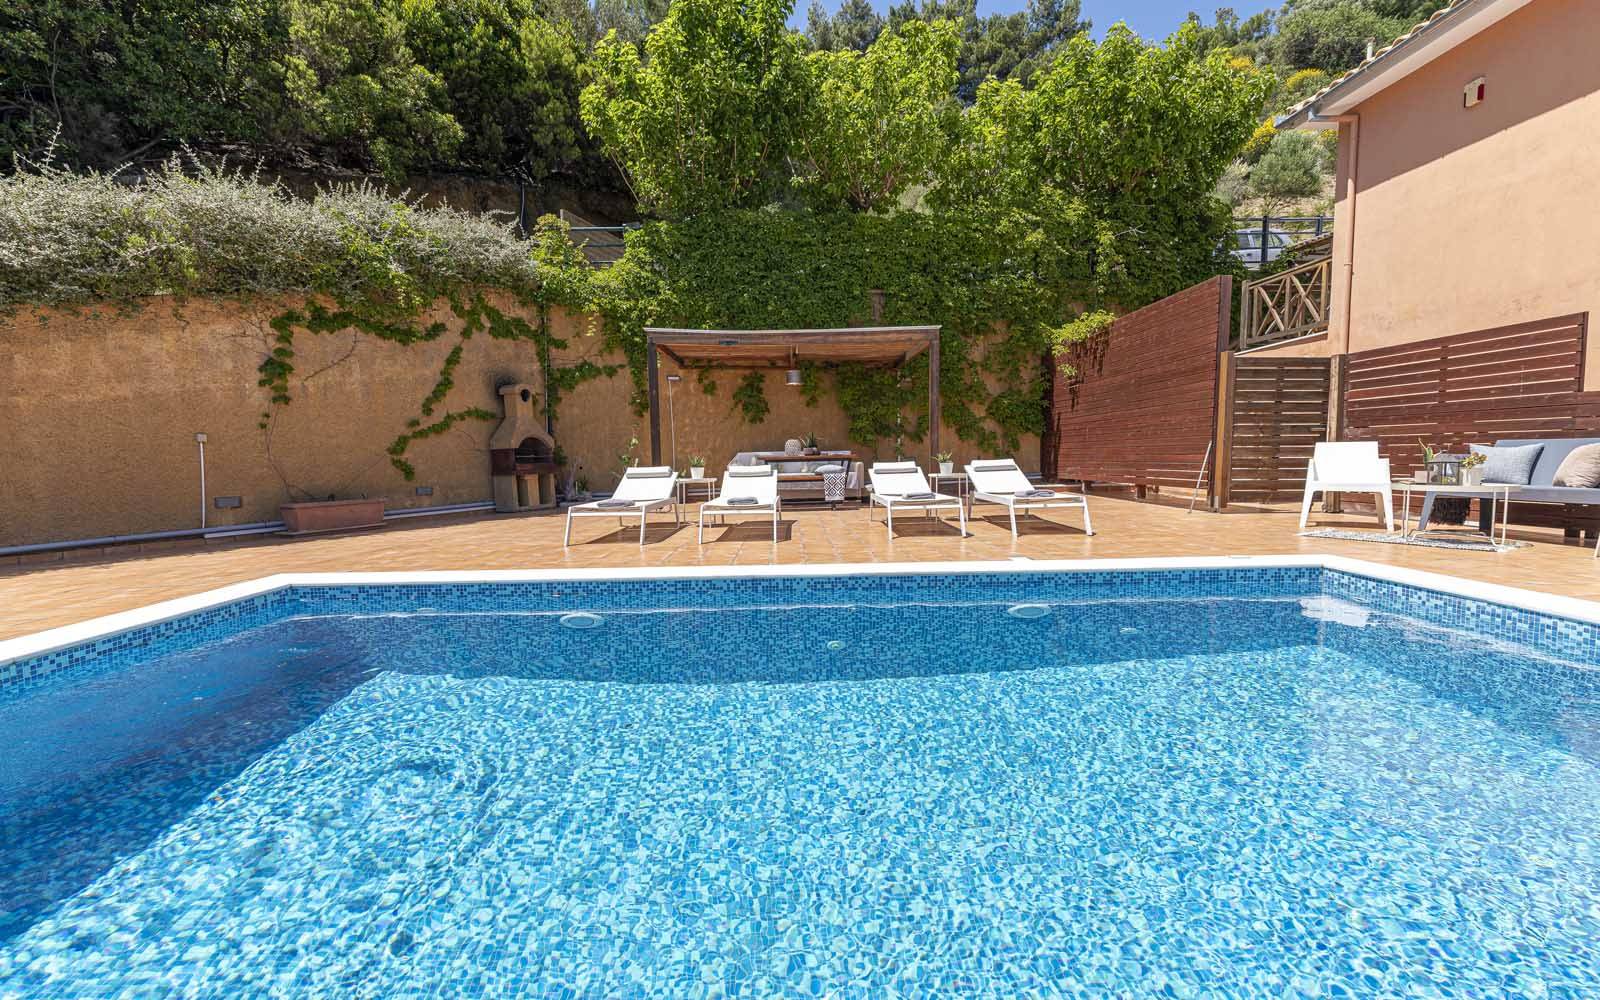 2 BR Villa Europa with private pool